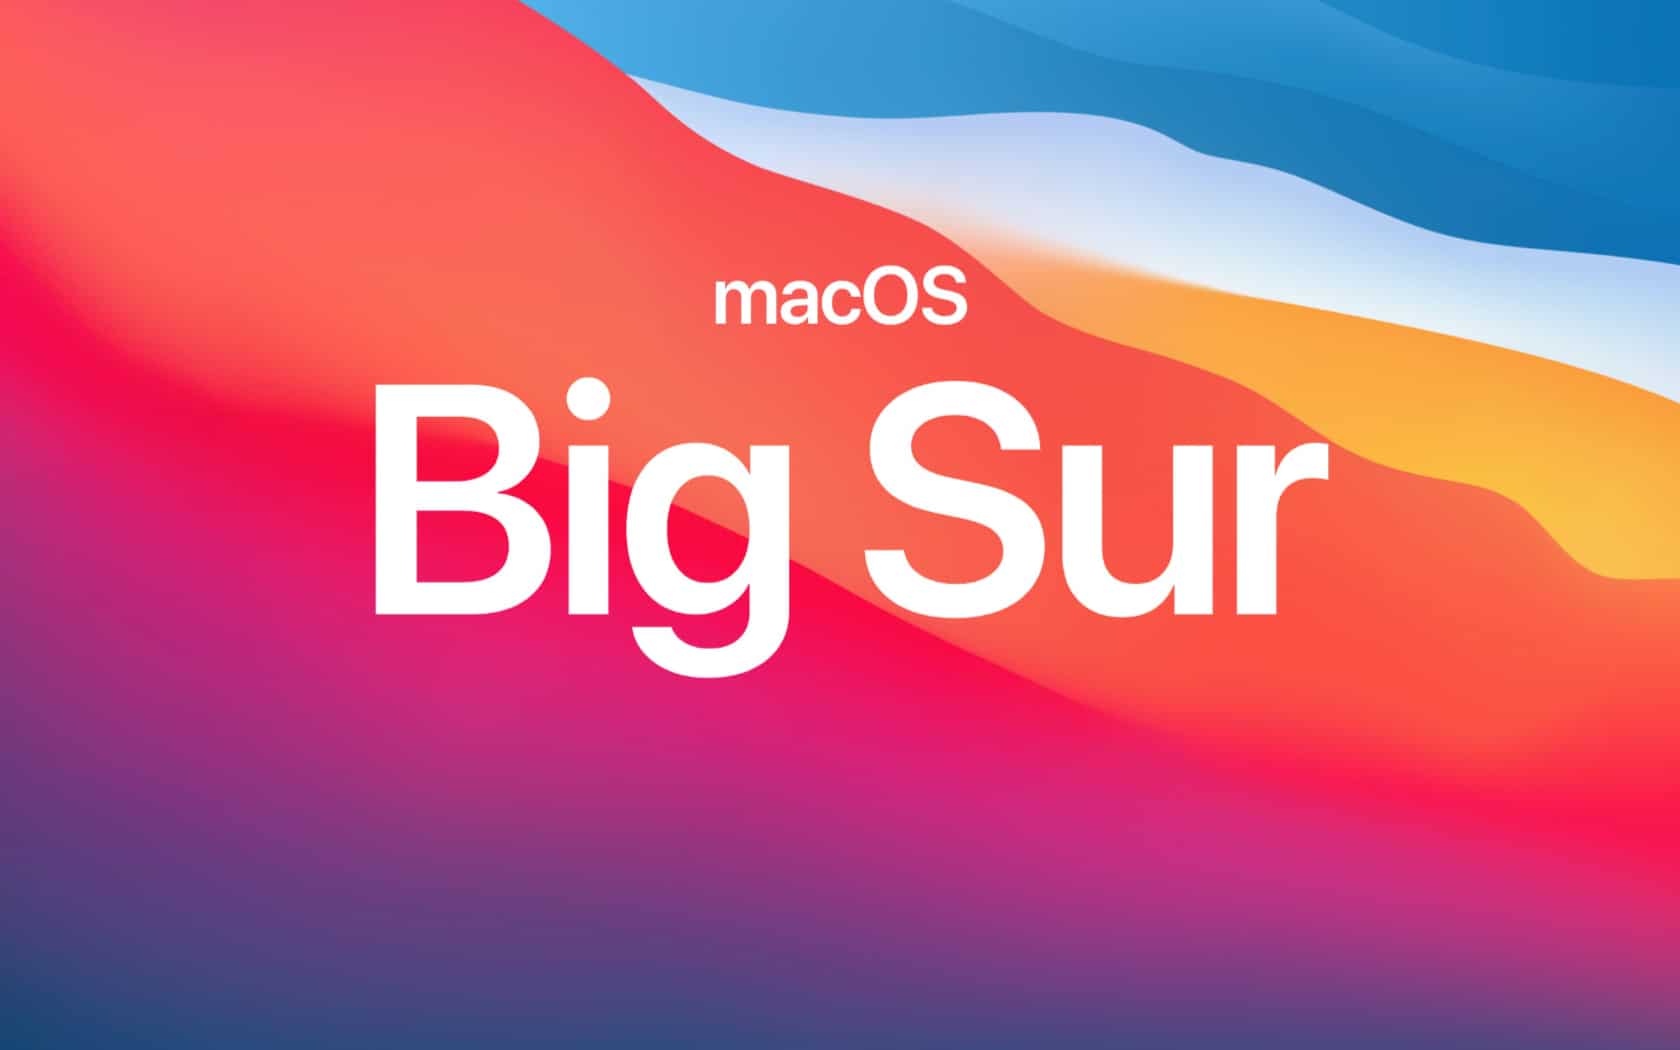 macos big sur mac update